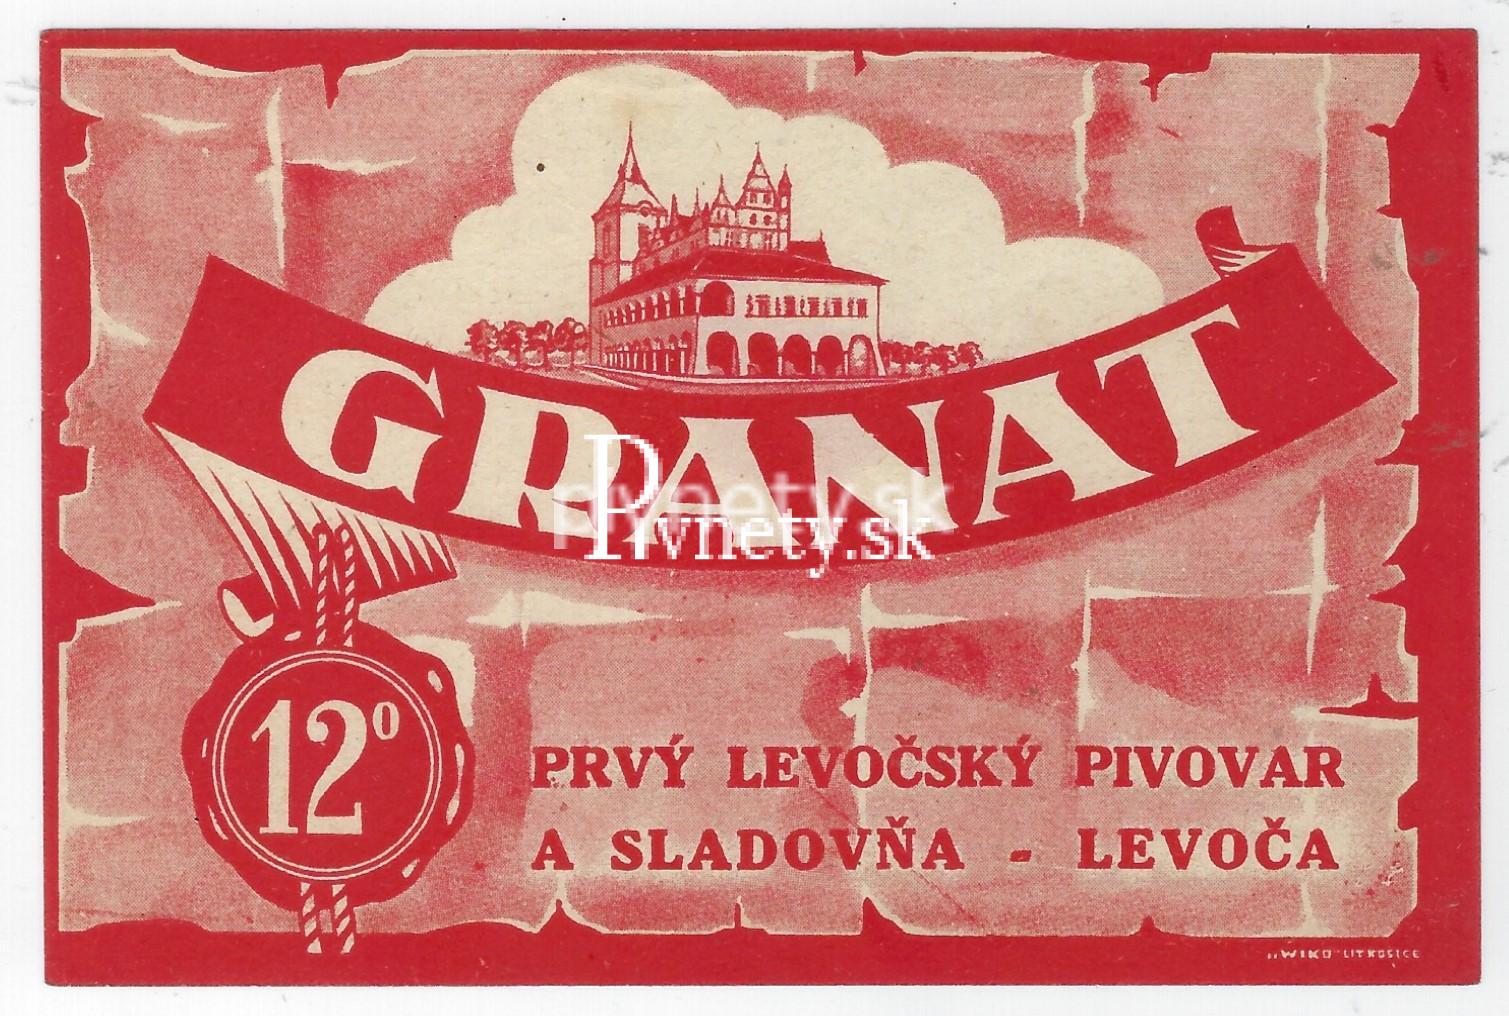 Prvý levočský pivovar Granat 12°